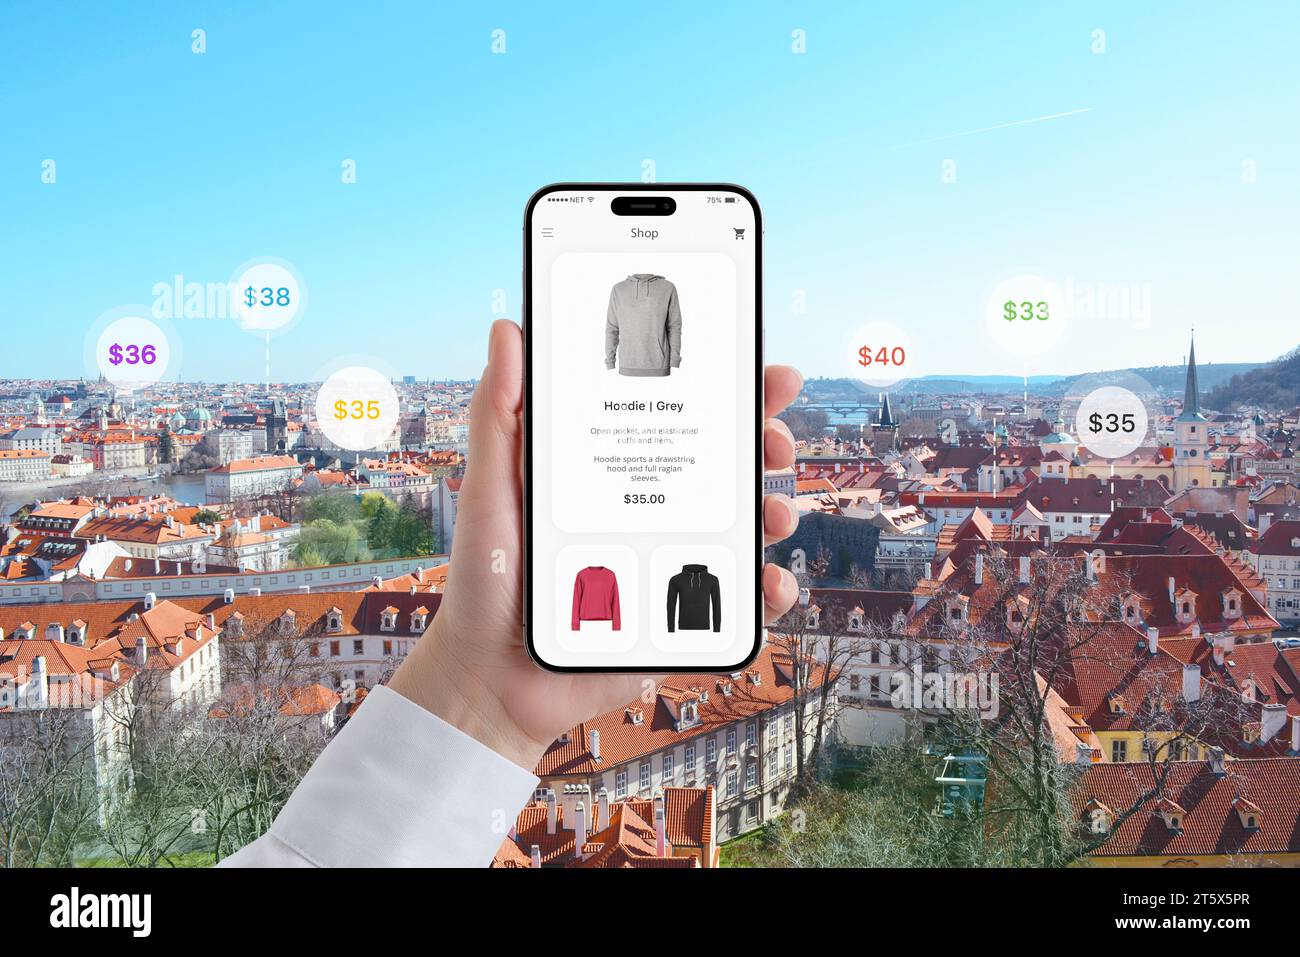 Il telefono in mano visualizza un'app per lo shopping con una felpa con cappuccio. Prezzi sullo sfondo del paesaggio cittadino Foto Stock